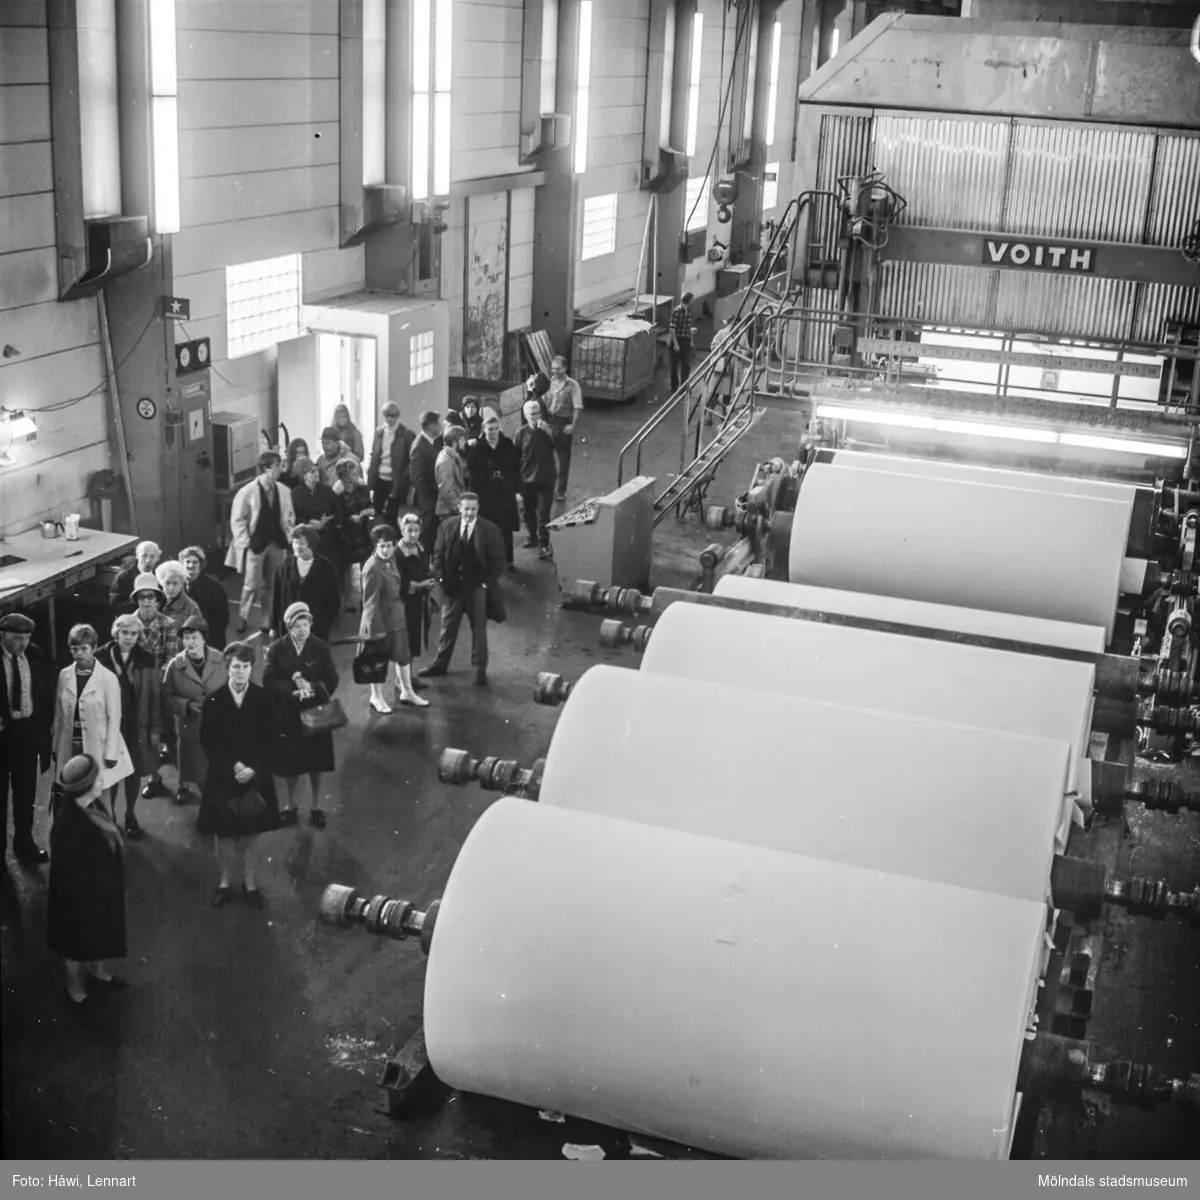 Fabriksvisning vid Pappersmaskinen Nr 5 (PM5) på Pappersbruket Papyrus i Mölndal, 10/10-1970.
Visning för Papyrus anställdas anhöriga.